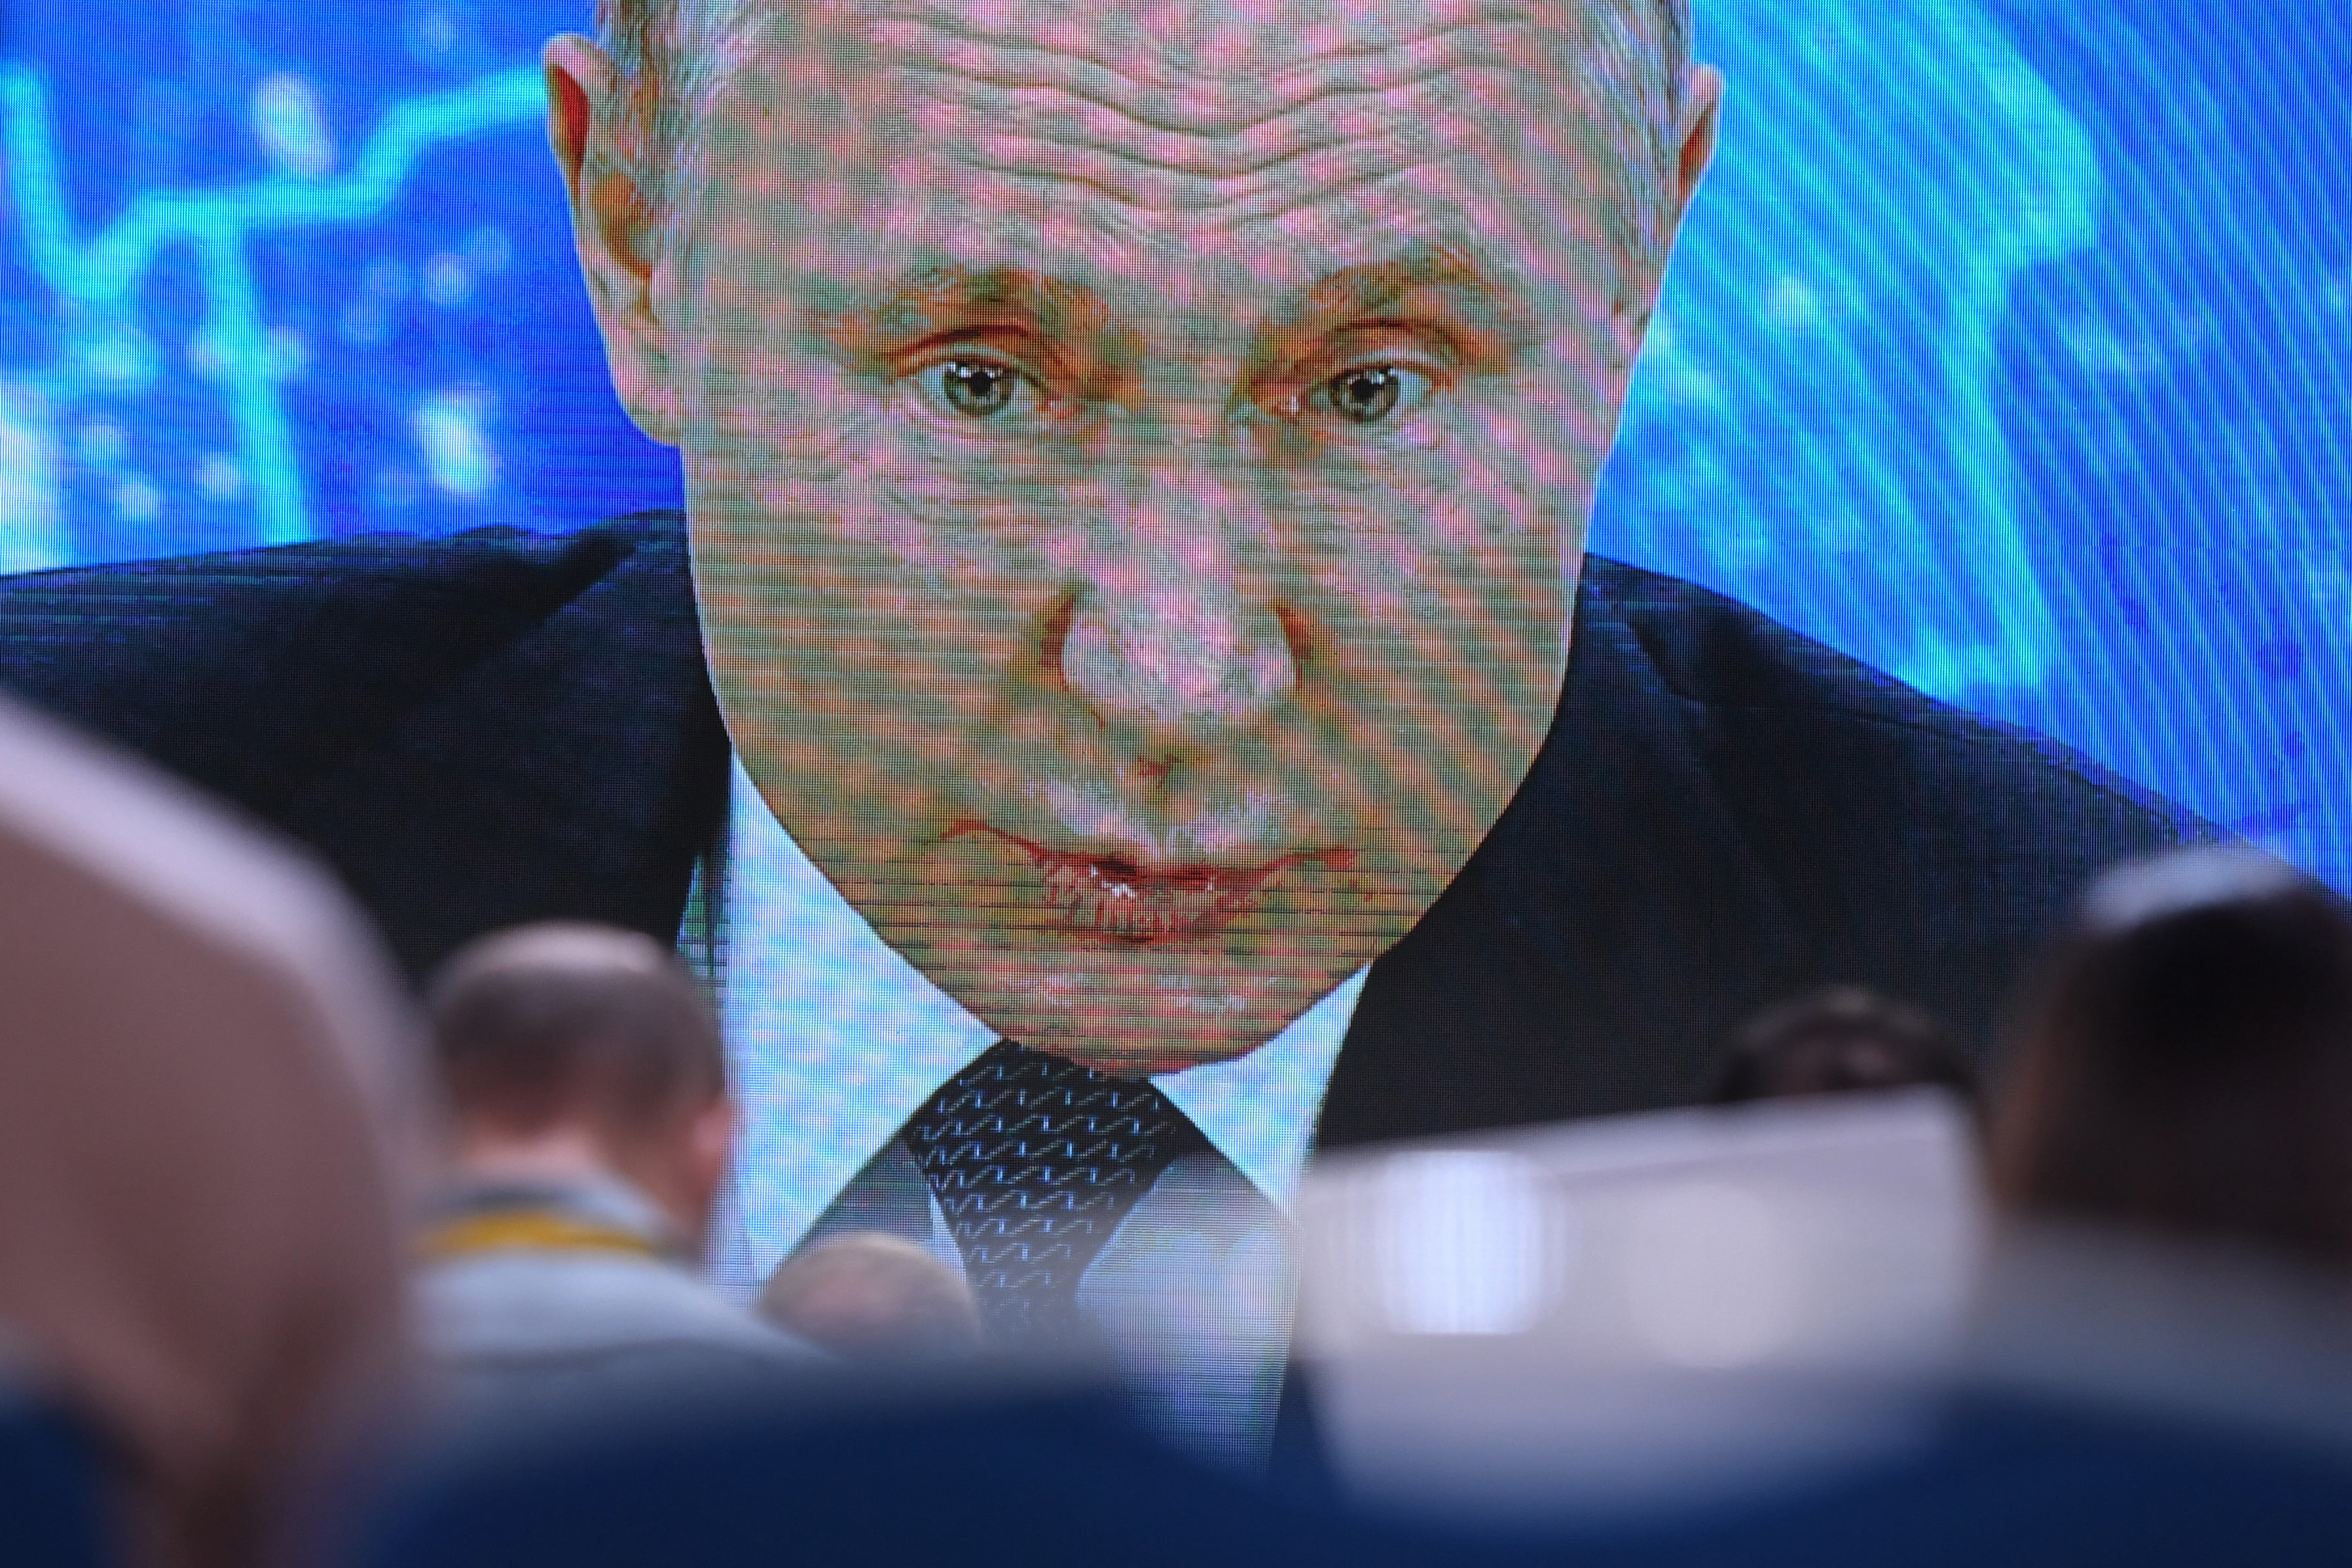 Orosz dilemma: úgy kéne népszerűsíteni az oltást, hogy közben ne zuhanjon be Putyin népszerűsége